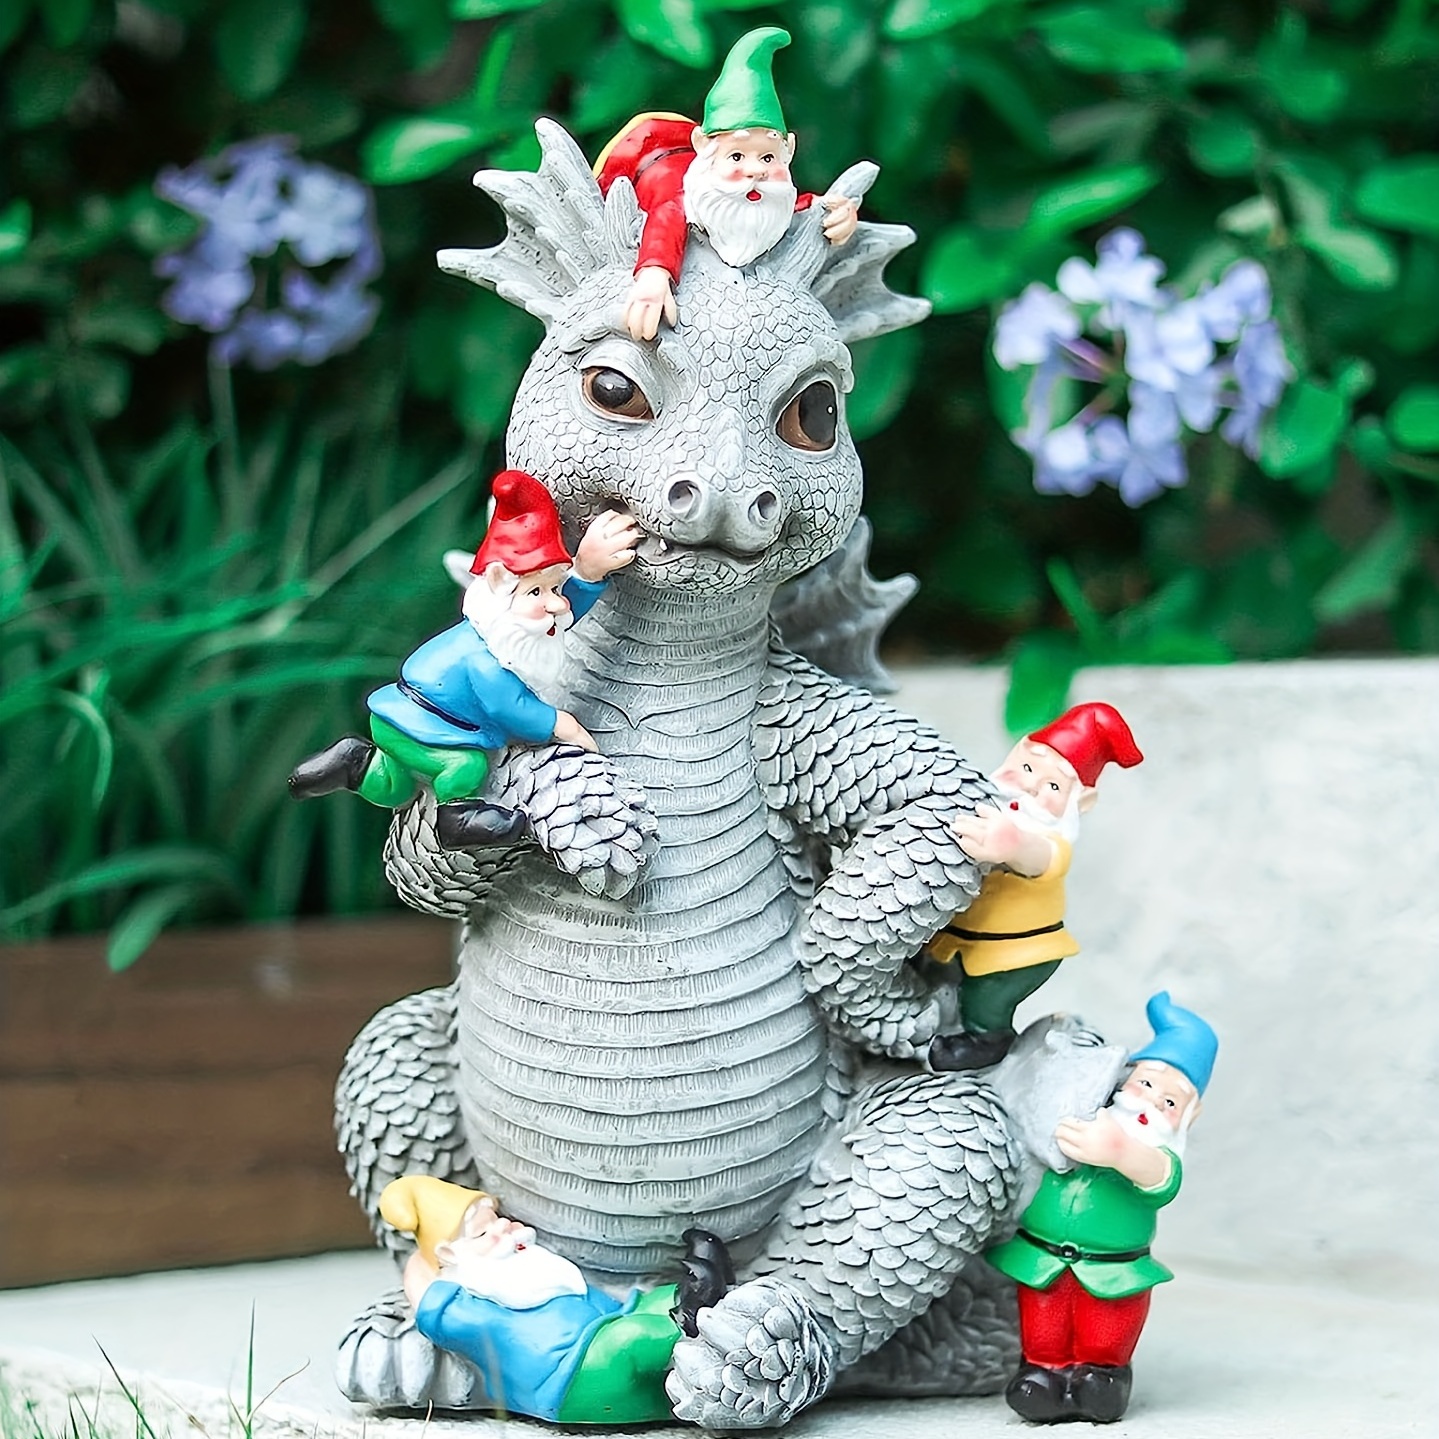 

1pc Dragon With Gnome Resin Sculpture For Desktop, Home Decor, Garden Decor, Outdoor